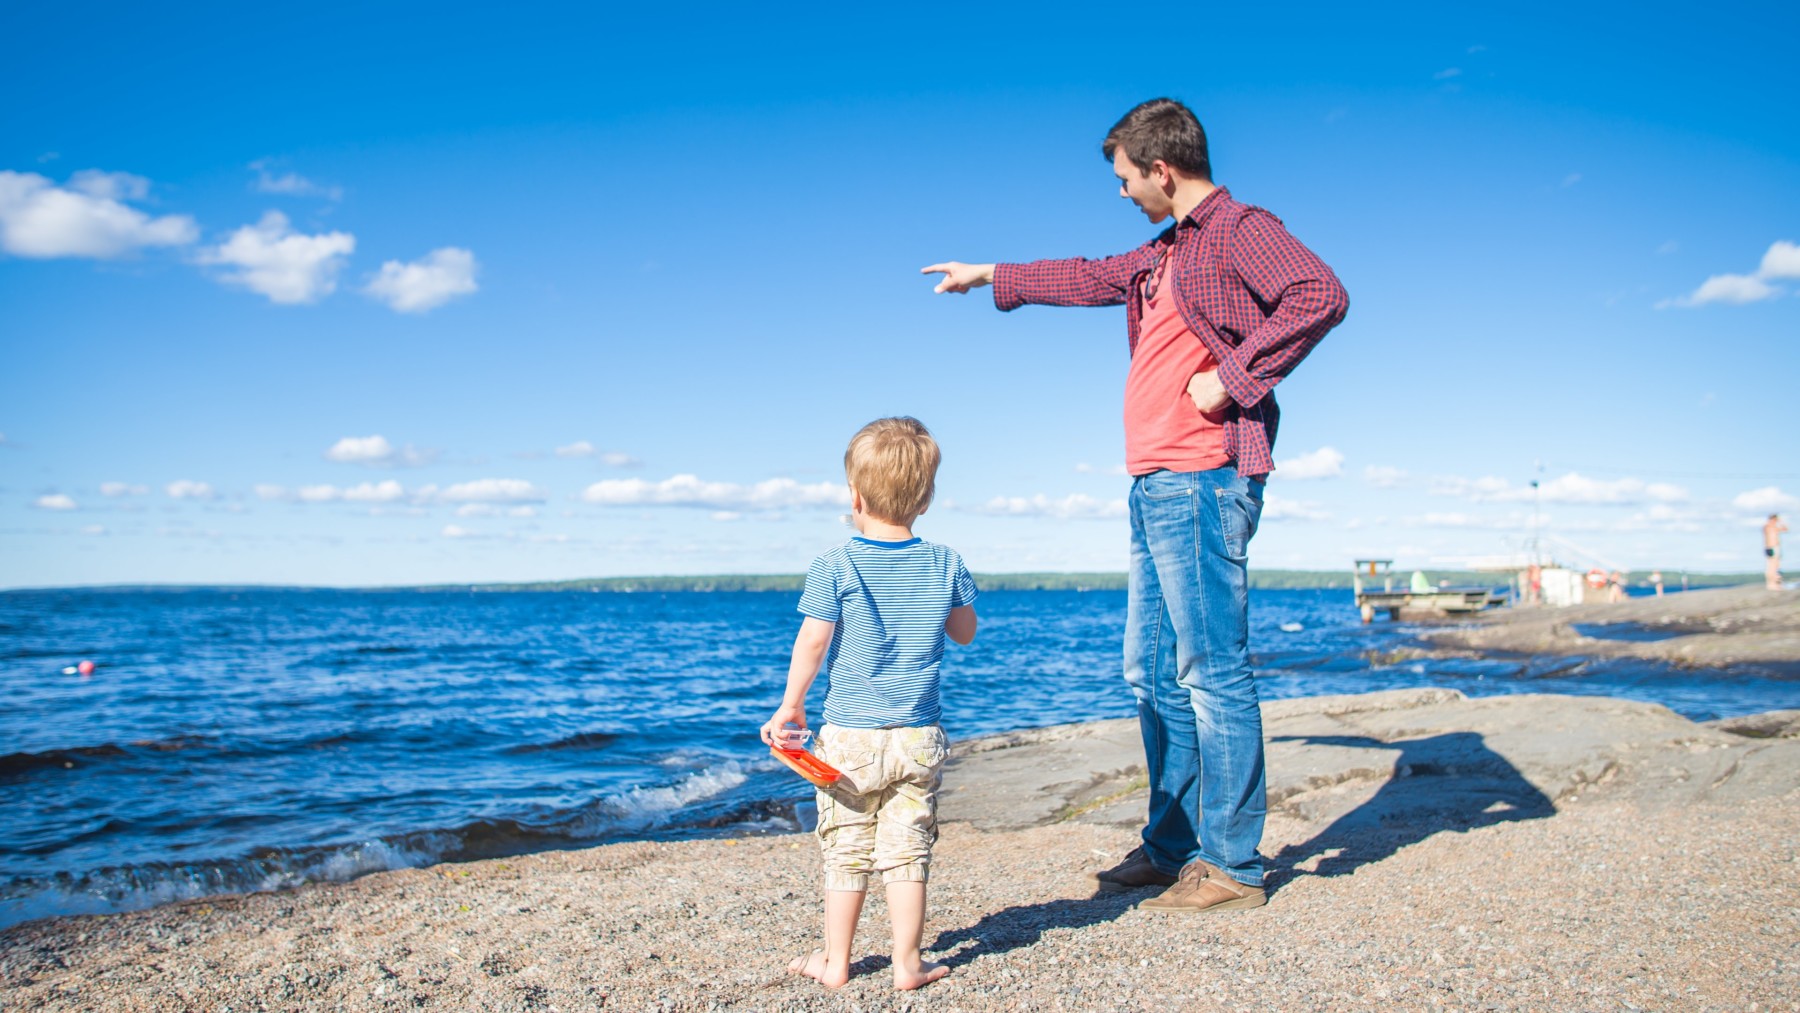 يقف رجل على شاطئ بحيرة مشيرًا بإصبعه نحو شيء في الأفق بينما ينظر ابنه في الاتجاه نفسه.